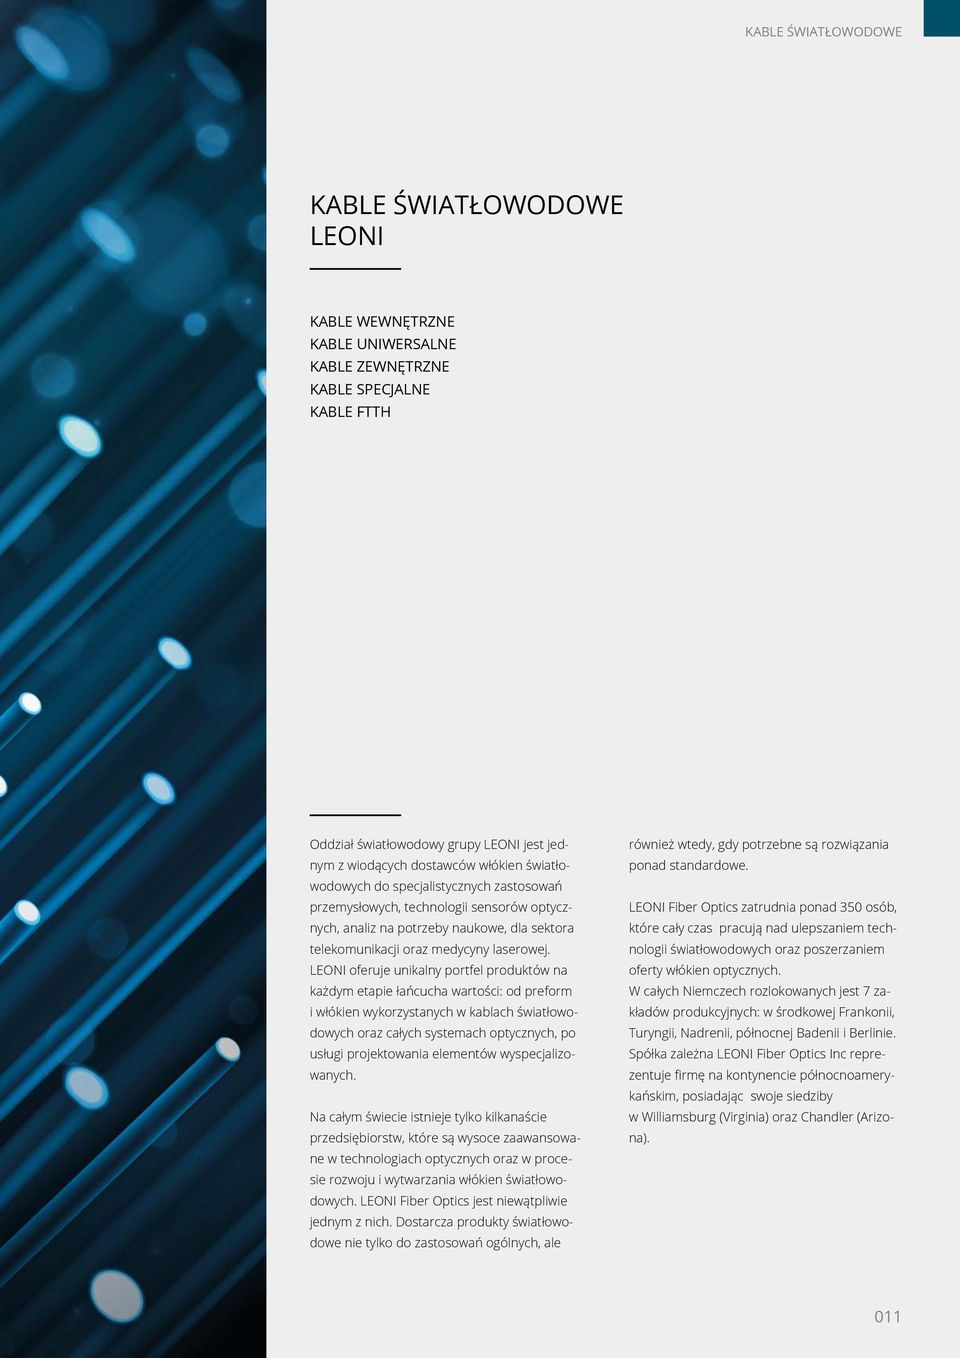 LEONI oferuje unikalny portfel produktów na każdym etapie łańcucha wartości: od preform i włókien wykorzystanych w kablach światłowodowych oraz całych systemach optycznych, po usługi projektowania